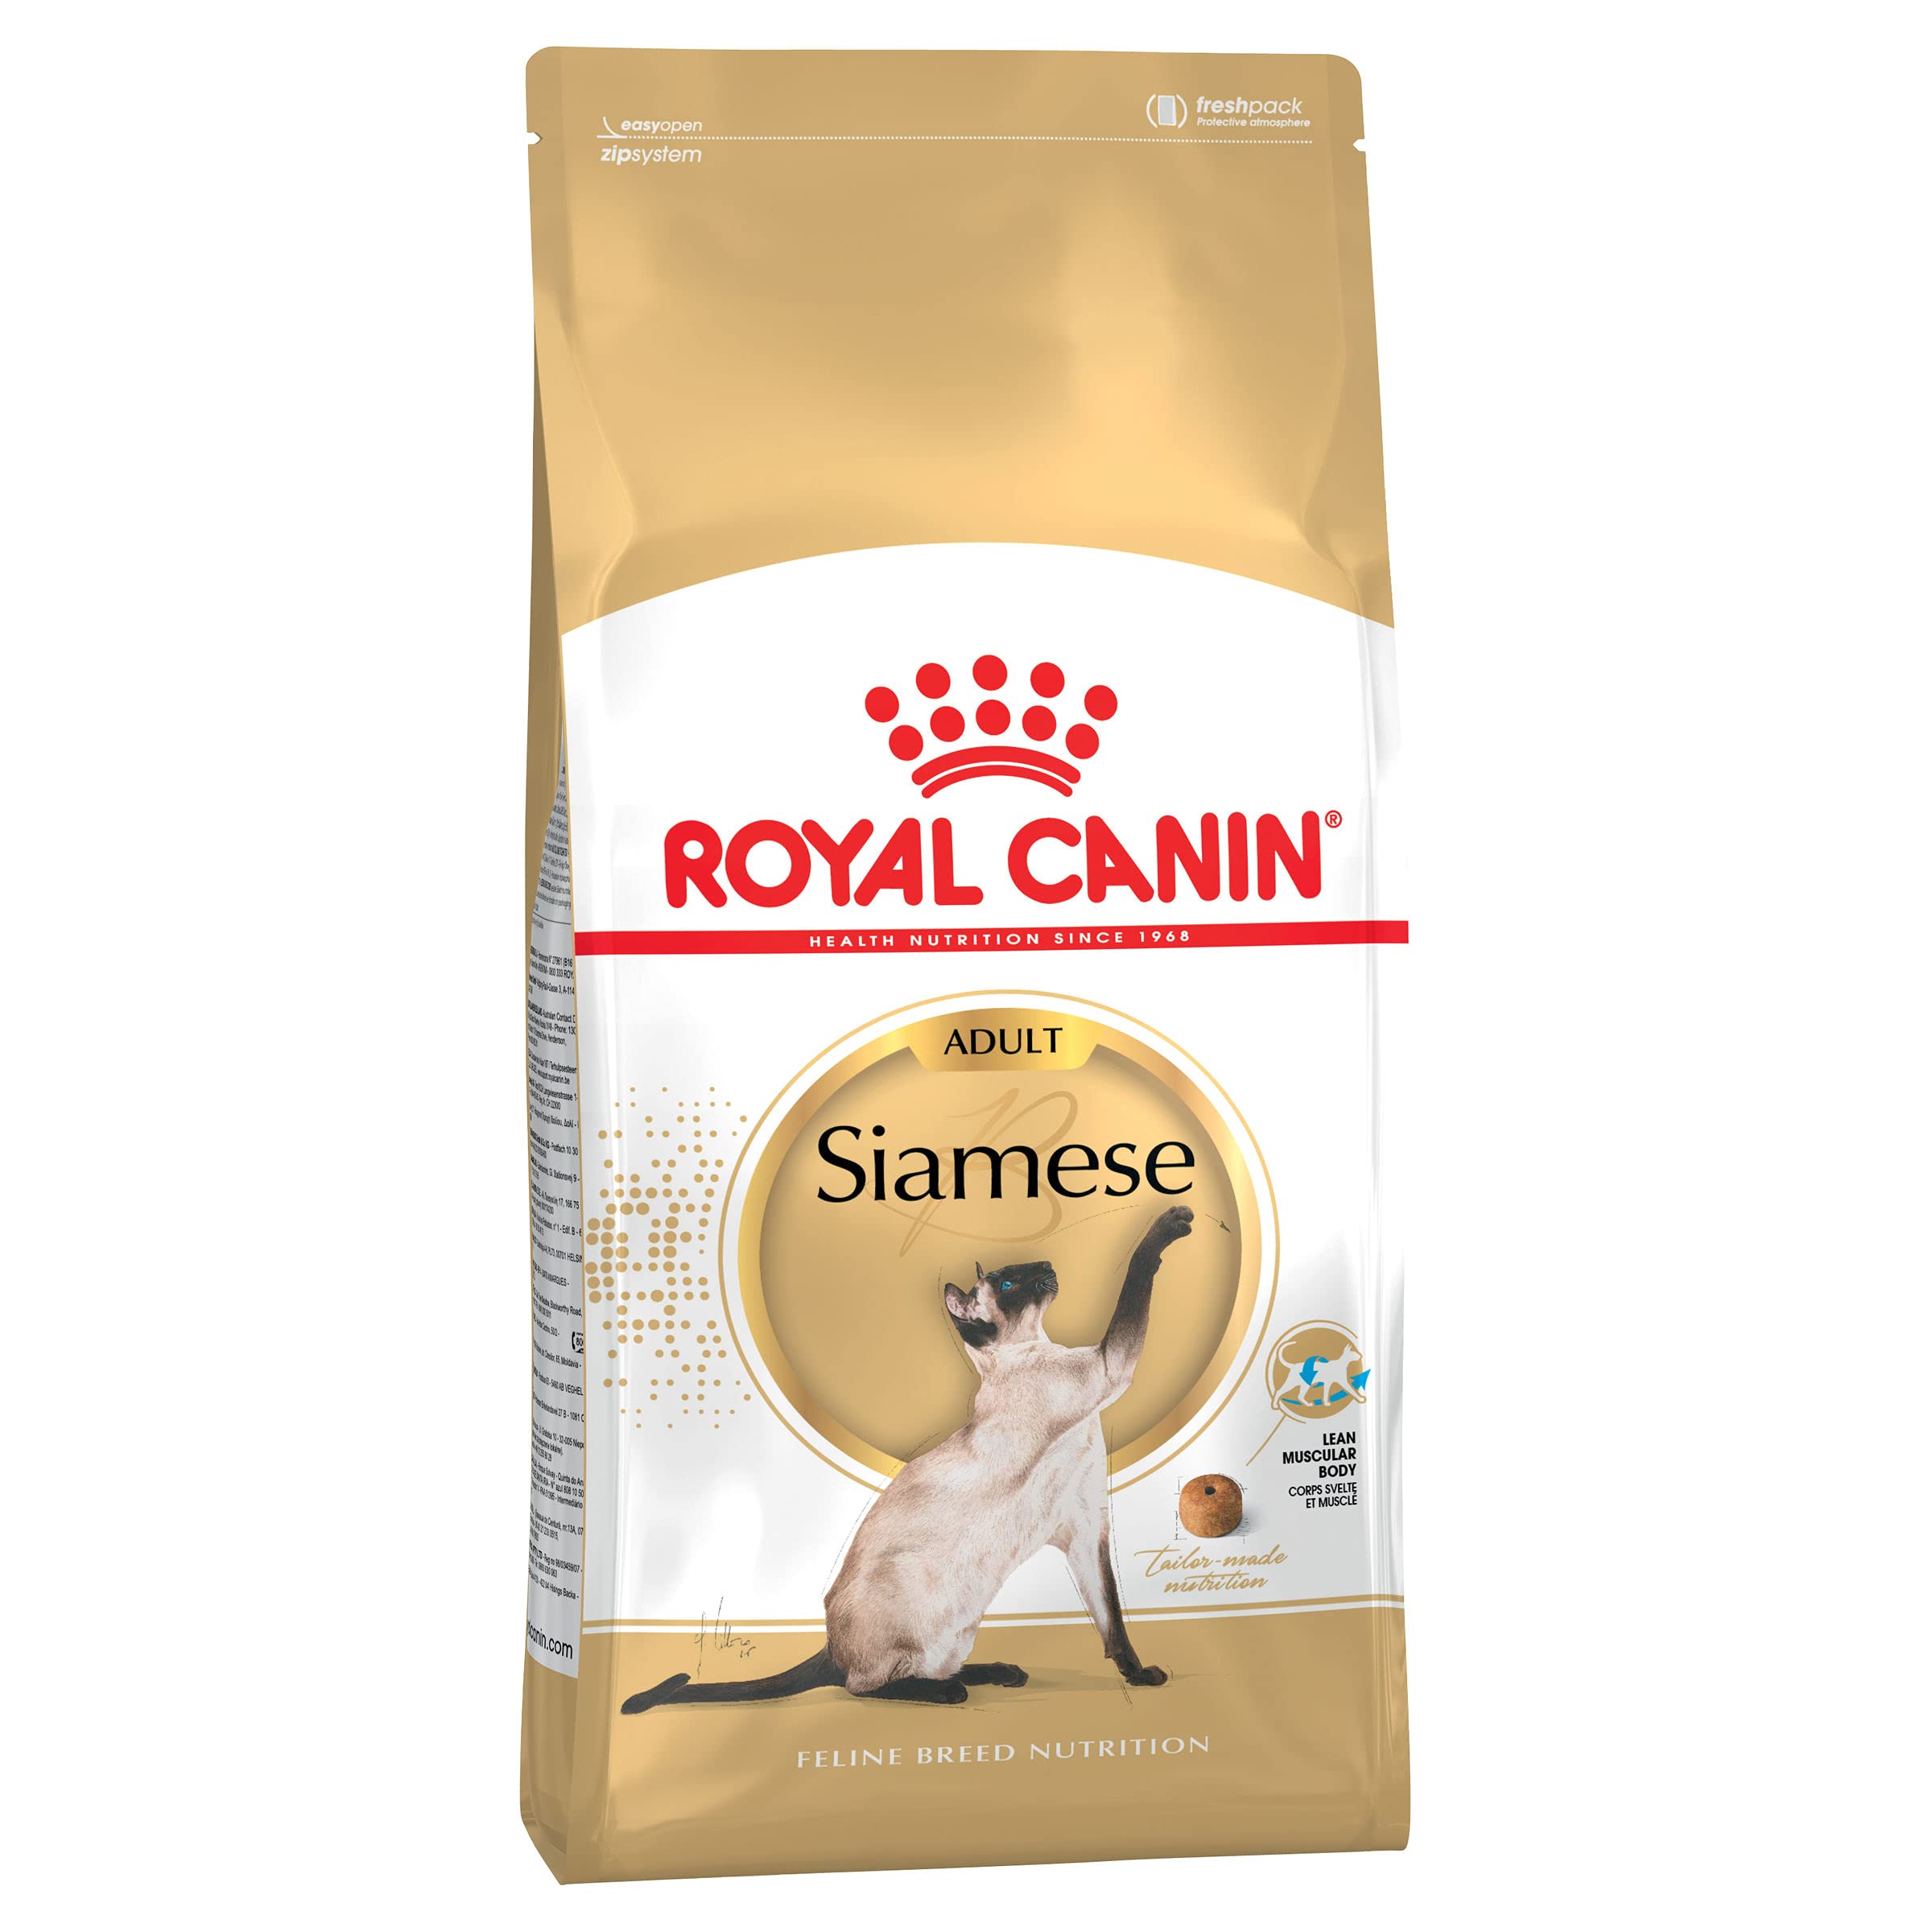 Royal Canin 55192 Siamese 4 kg - Katzenfutter